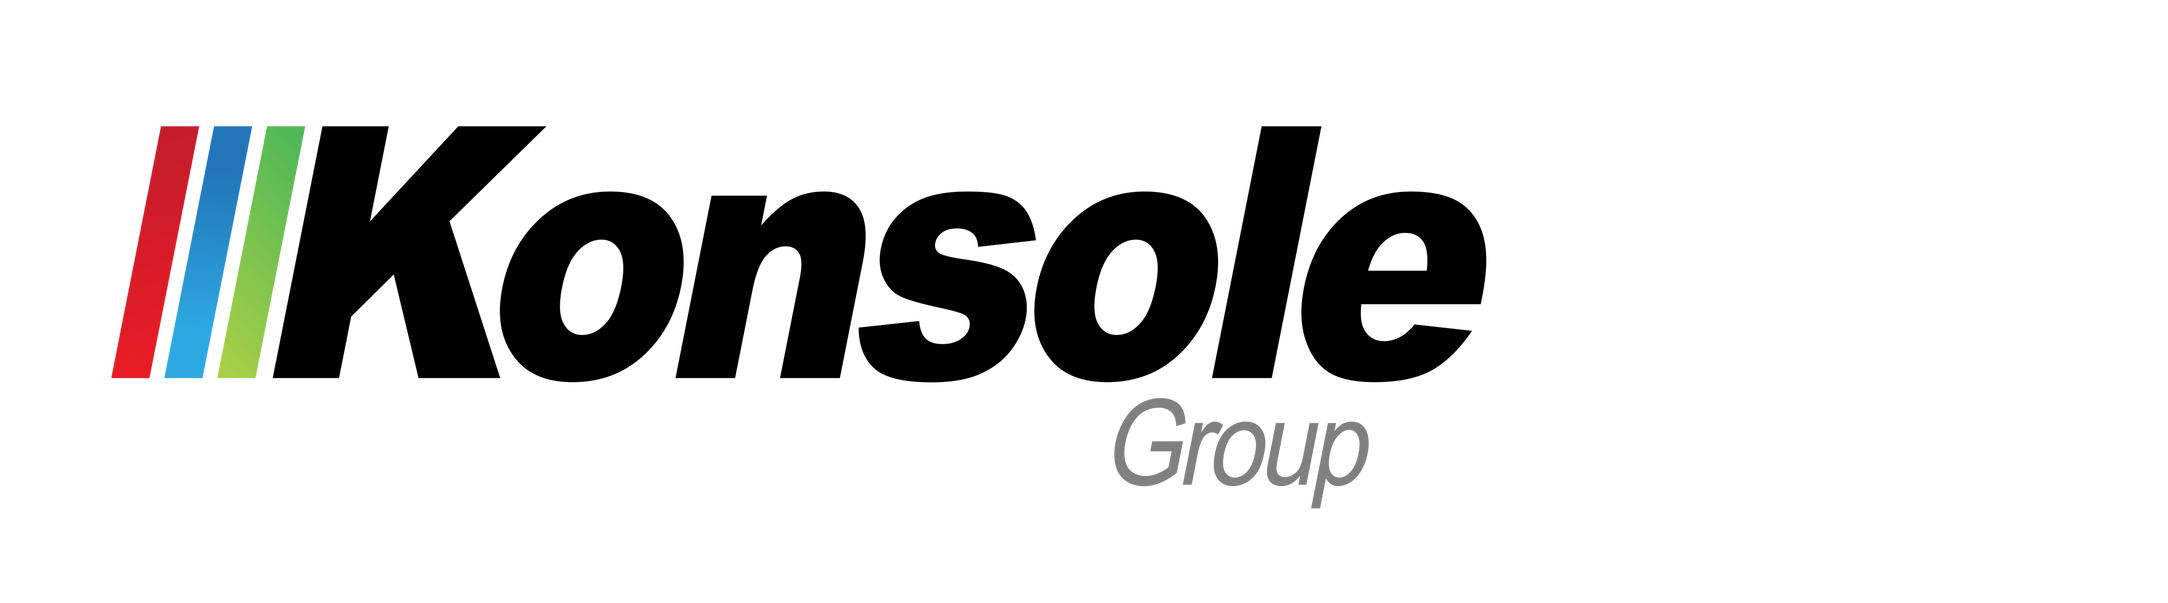 konsolegroup Logo